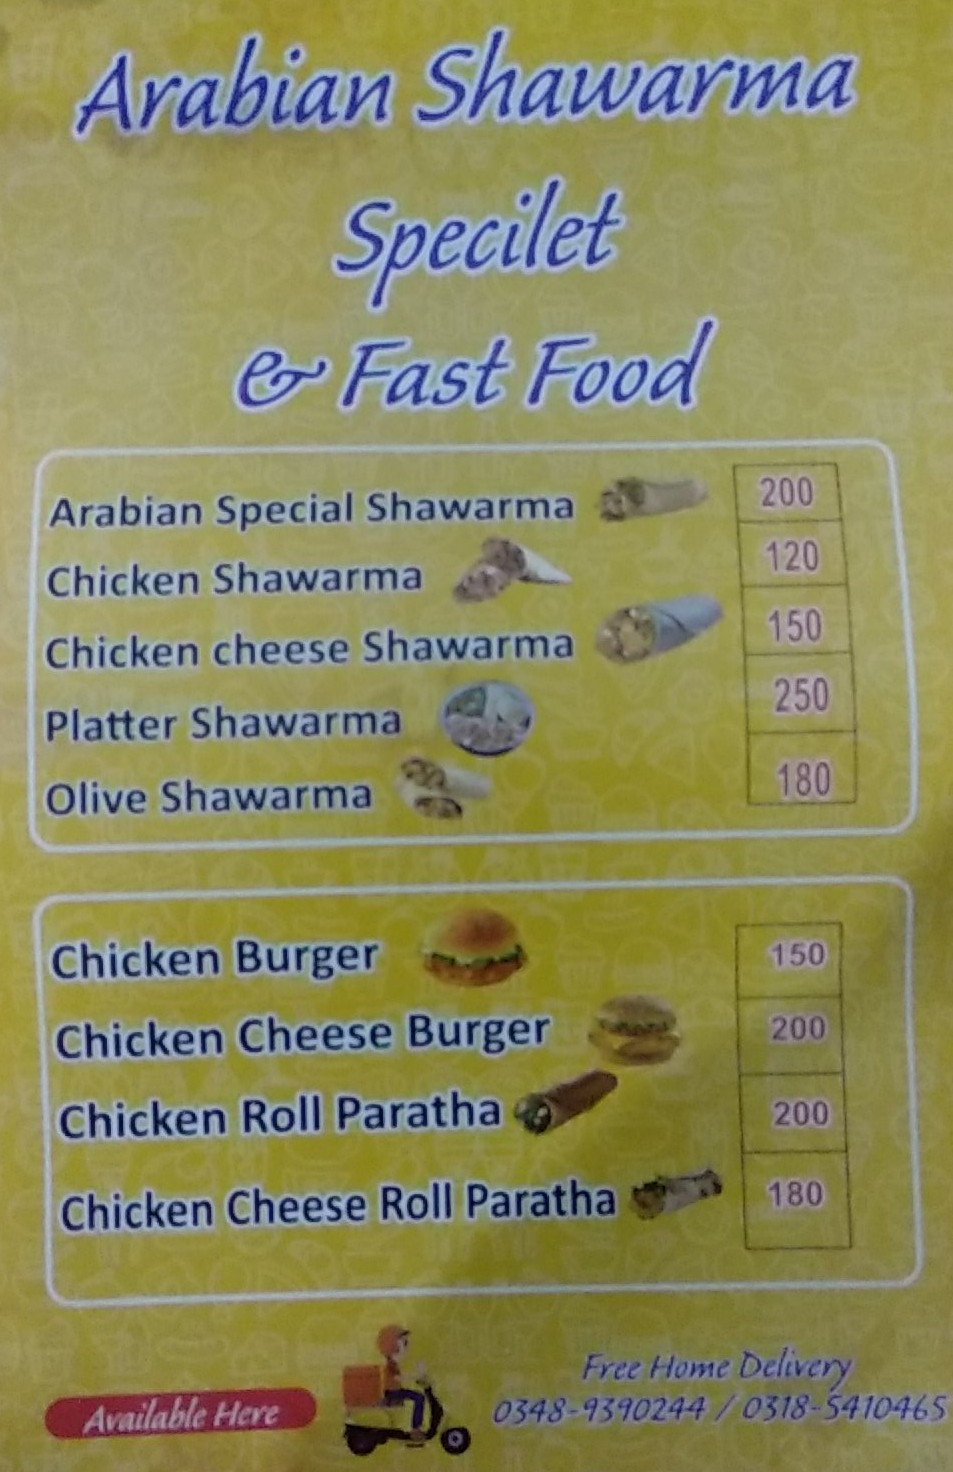 Arabian Shawarma Specialist & Fast Food